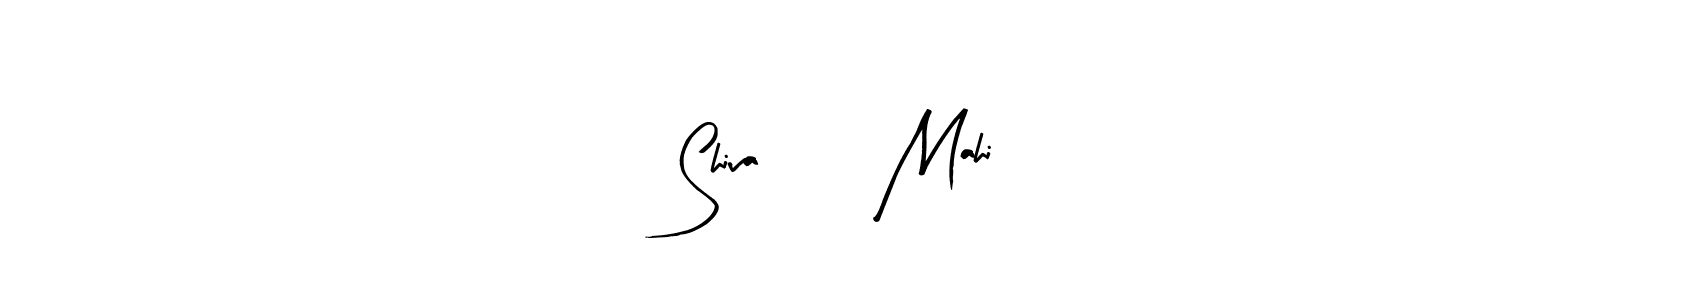 How to make Shiva ♥️ Mahi signature? Arty Signature is a professional autograph style. Create handwritten signature for Shiva ♥️ Mahi name. Shiva ♥️ Mahi signature style 8 images and pictures png